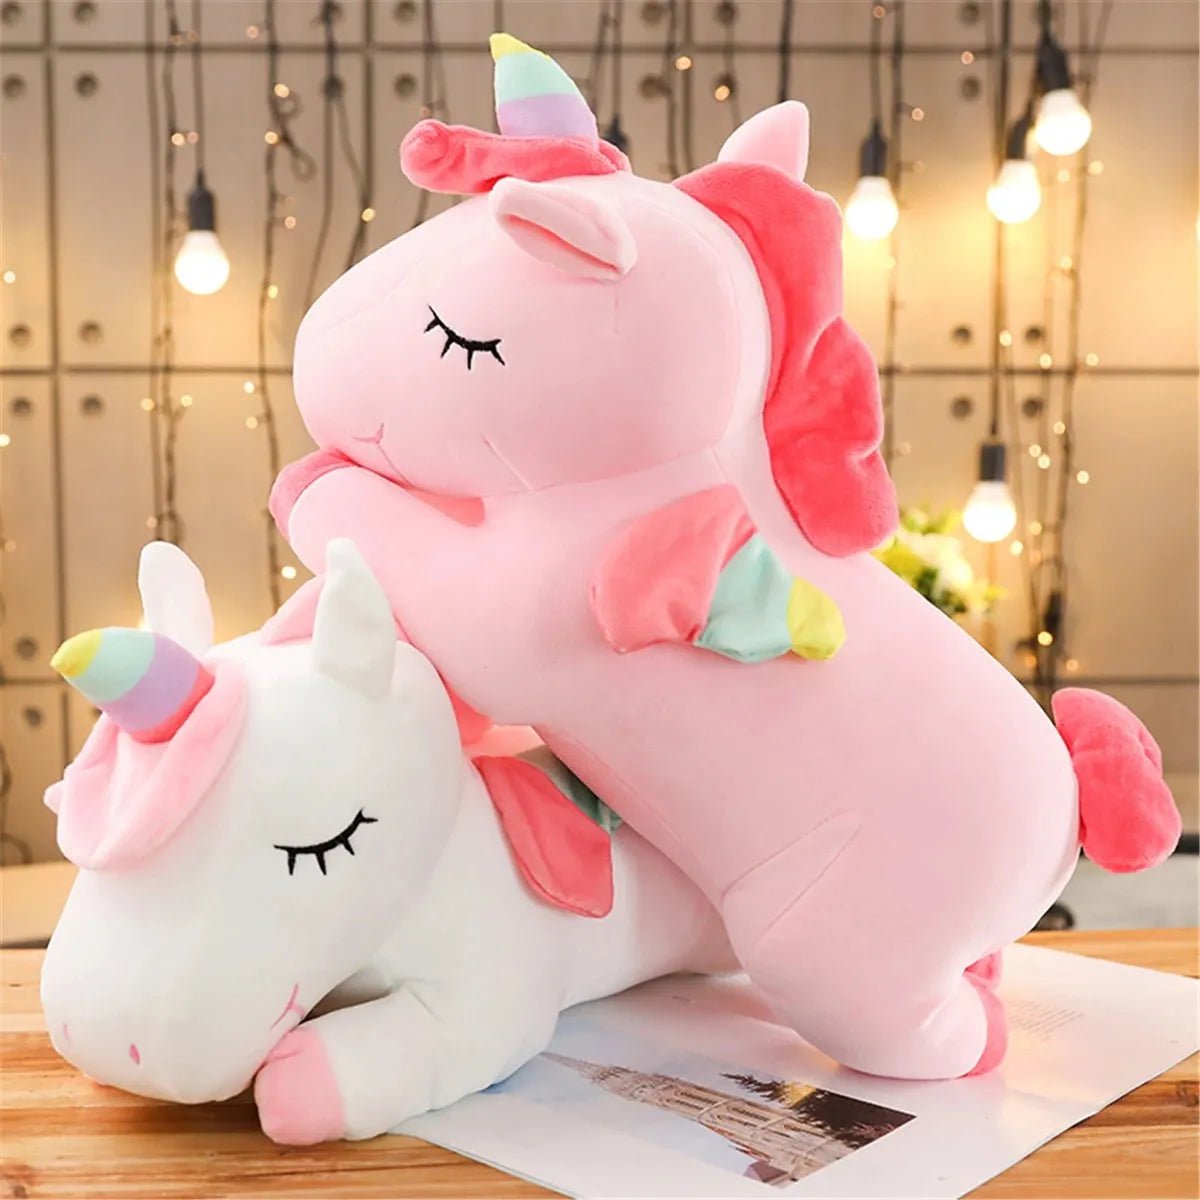 Unicorn Plush Toy 25cm | Stuffed, Soft, Cute teddy for kids